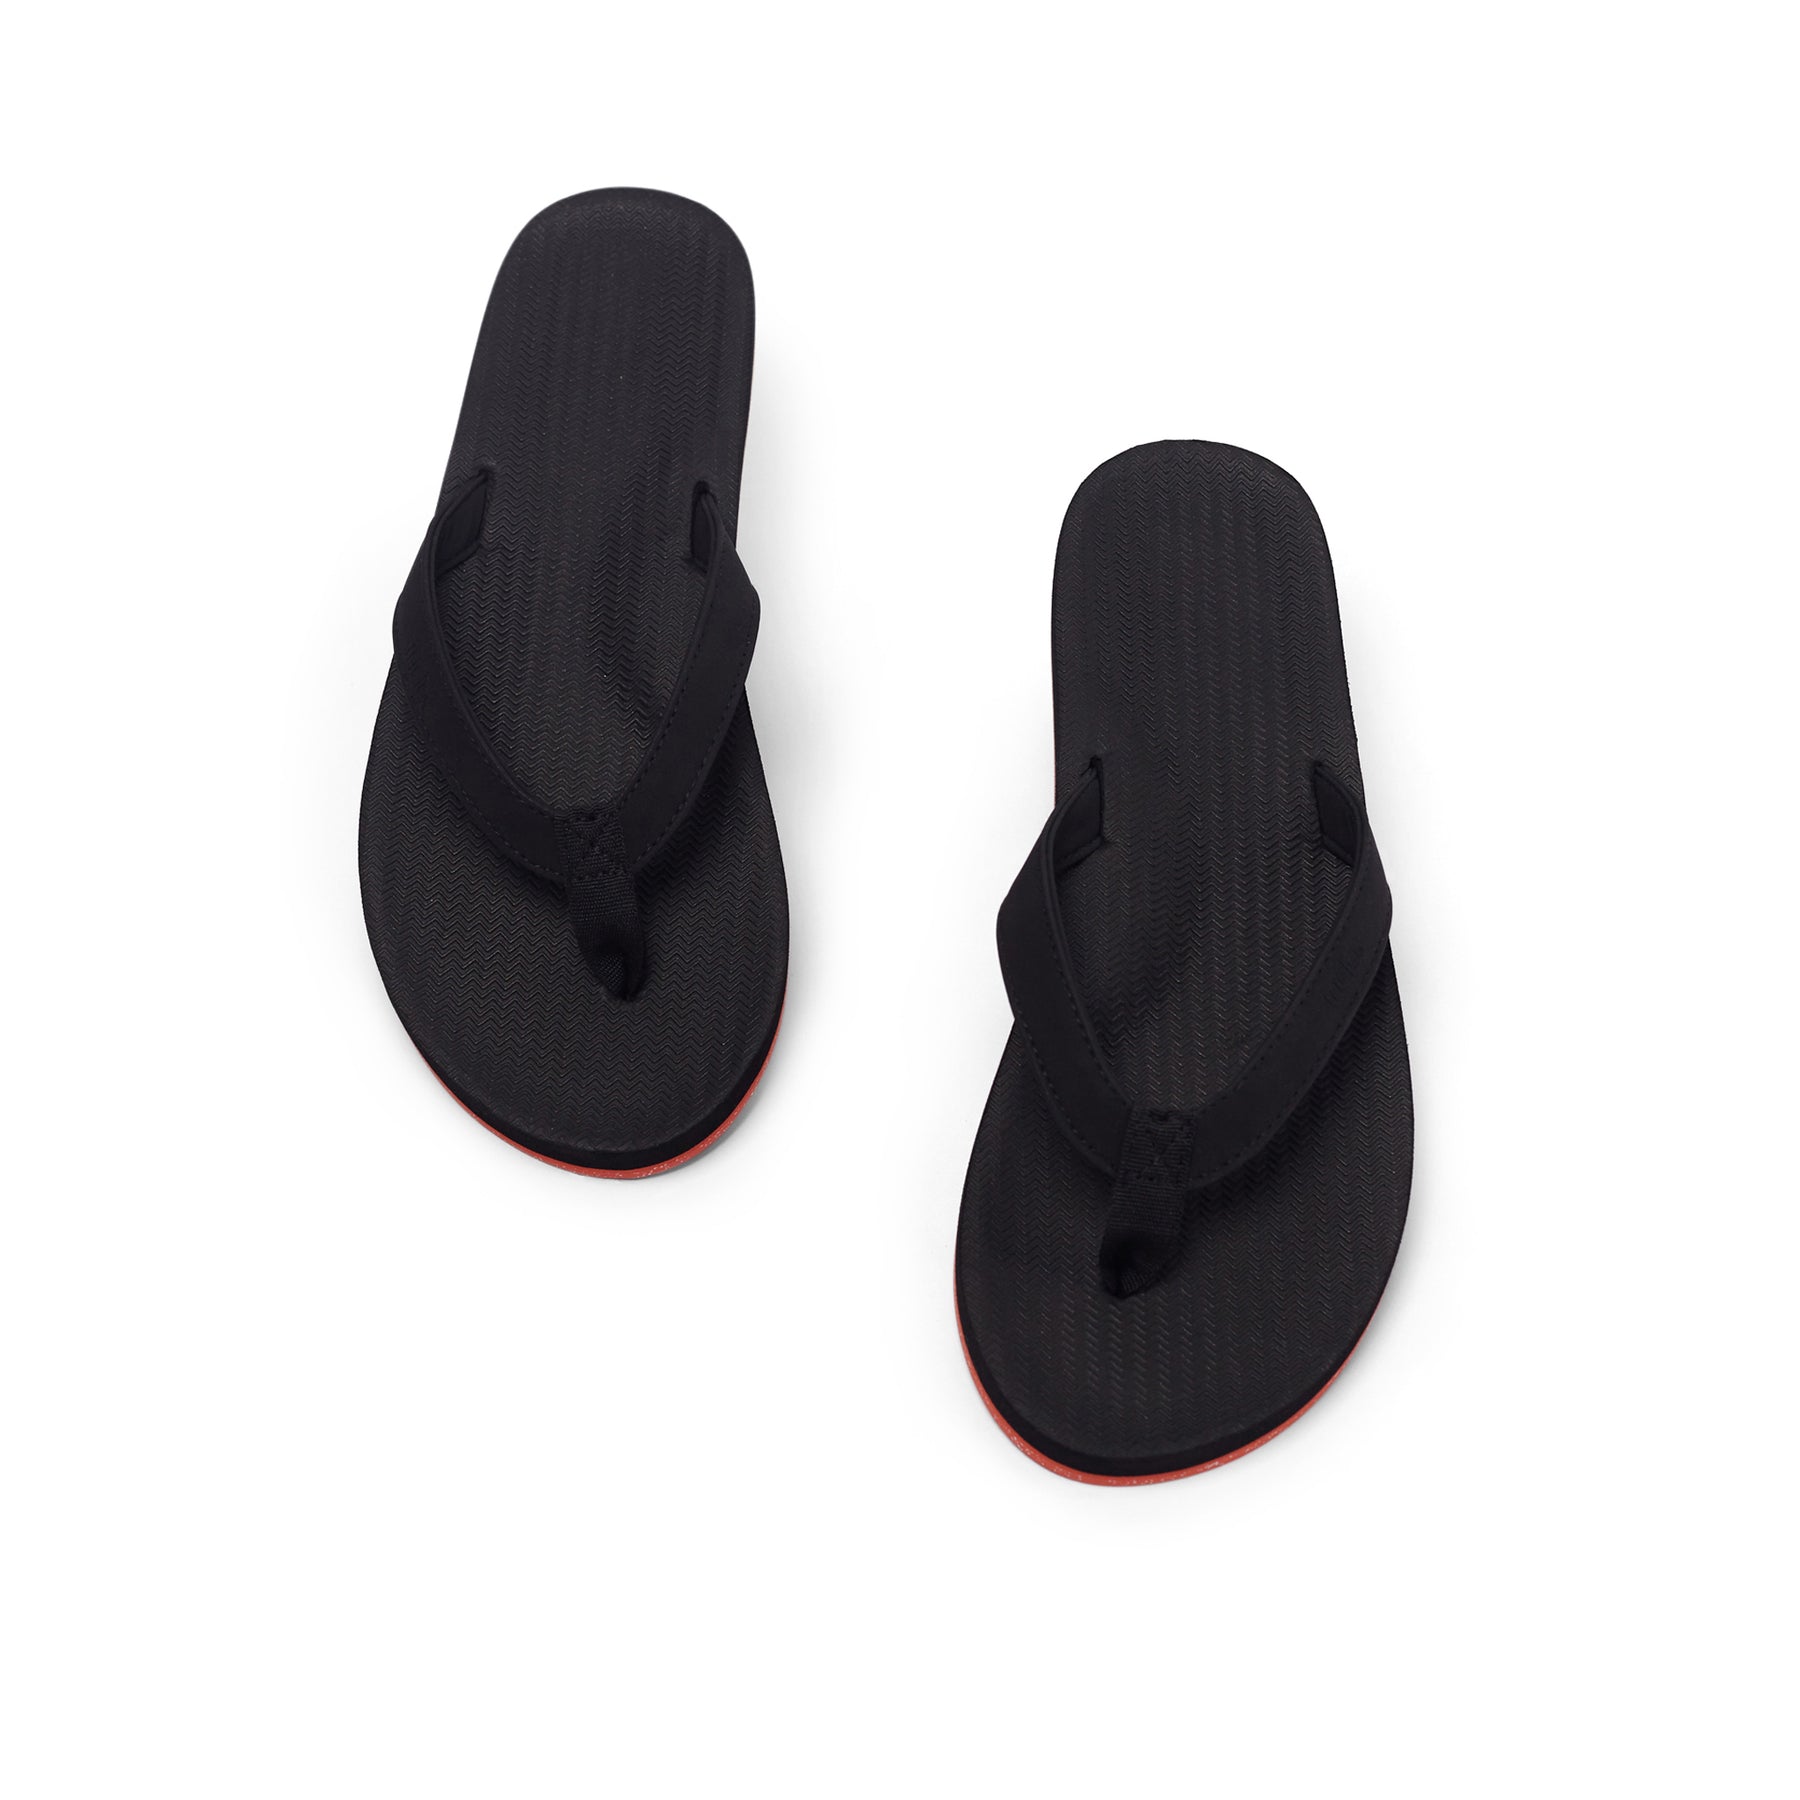 Women's Flip Flops Sneaker Sole - Black/Orange Sole